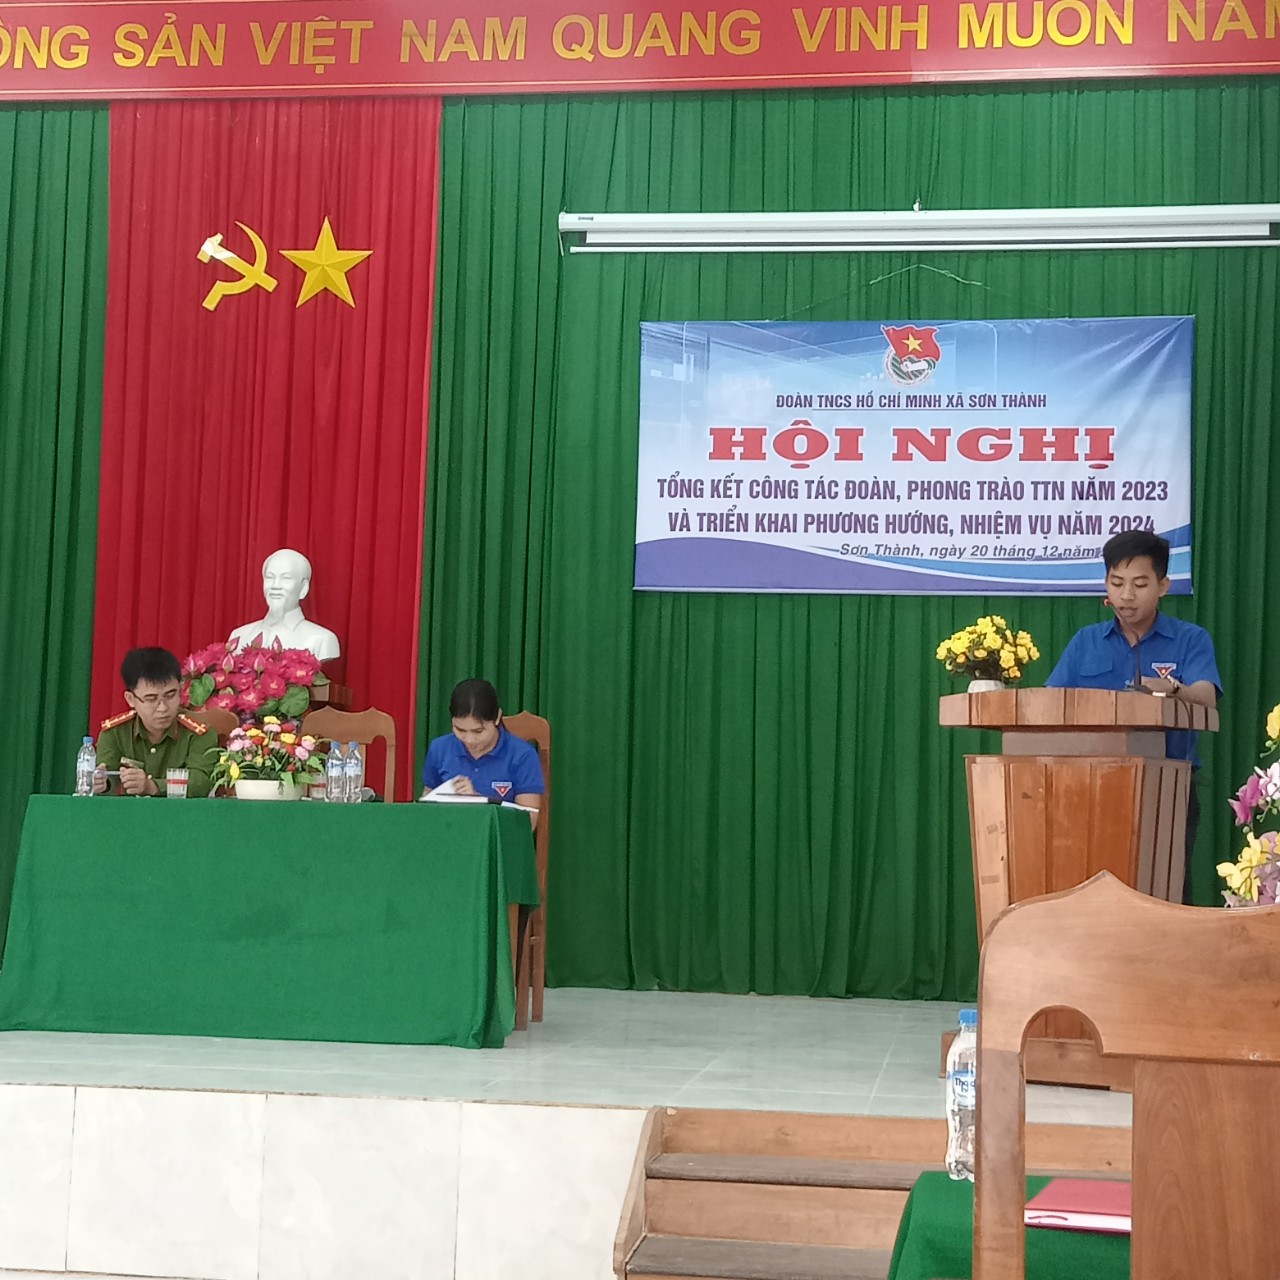 Đoàn TNCS Hồ Chí Minh xã Sơn Thành tổ chức Hội nghị Tổng kết công tác Đoàn và phong trào thanh thiếu nhi năm 2023